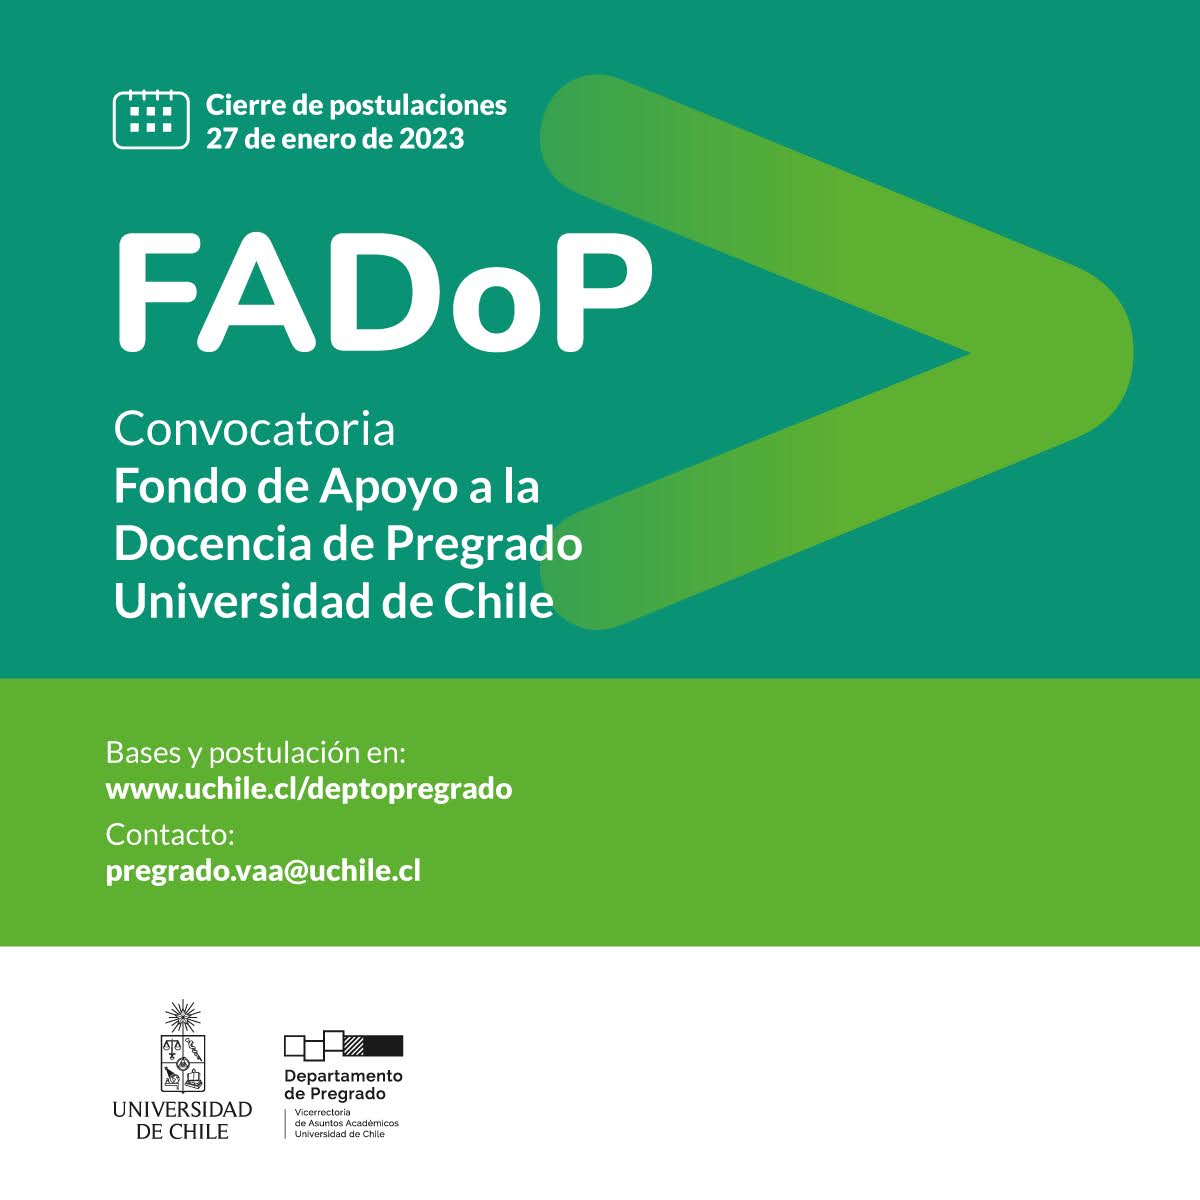 Fondo de Apoyo a la Docencia de Pregrado (FADOP) 2023